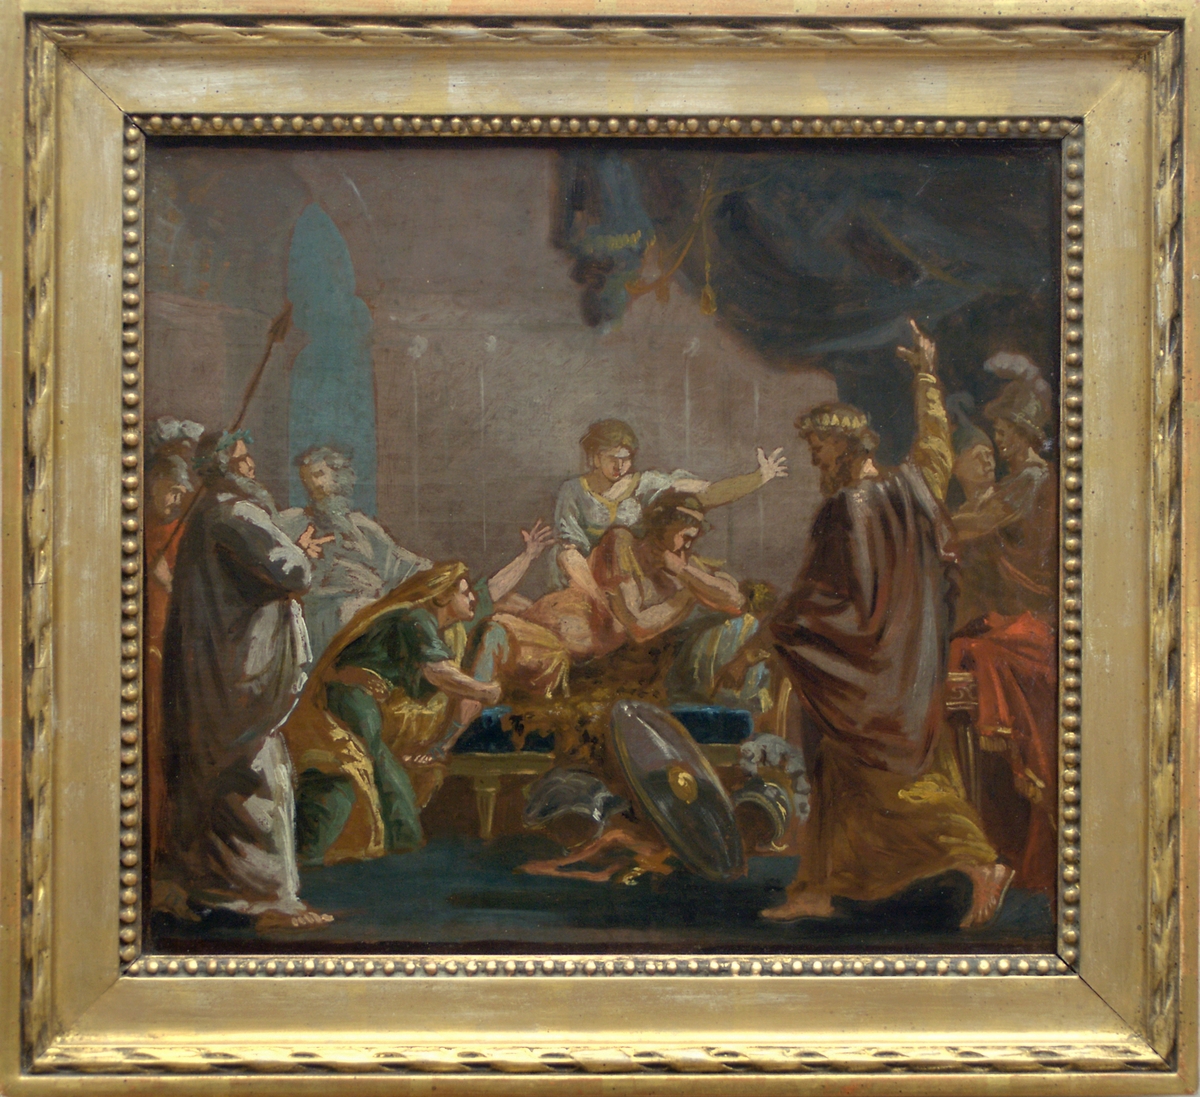 Målningen är en skiss till en mytologisk scen ur den grekiska hjälten Meleagers historia. En centralt uppbyggd figurscen enligt klassicistiskt mönster, med åtta gestalter agerande runt den döende hjälten i bildens mitt.